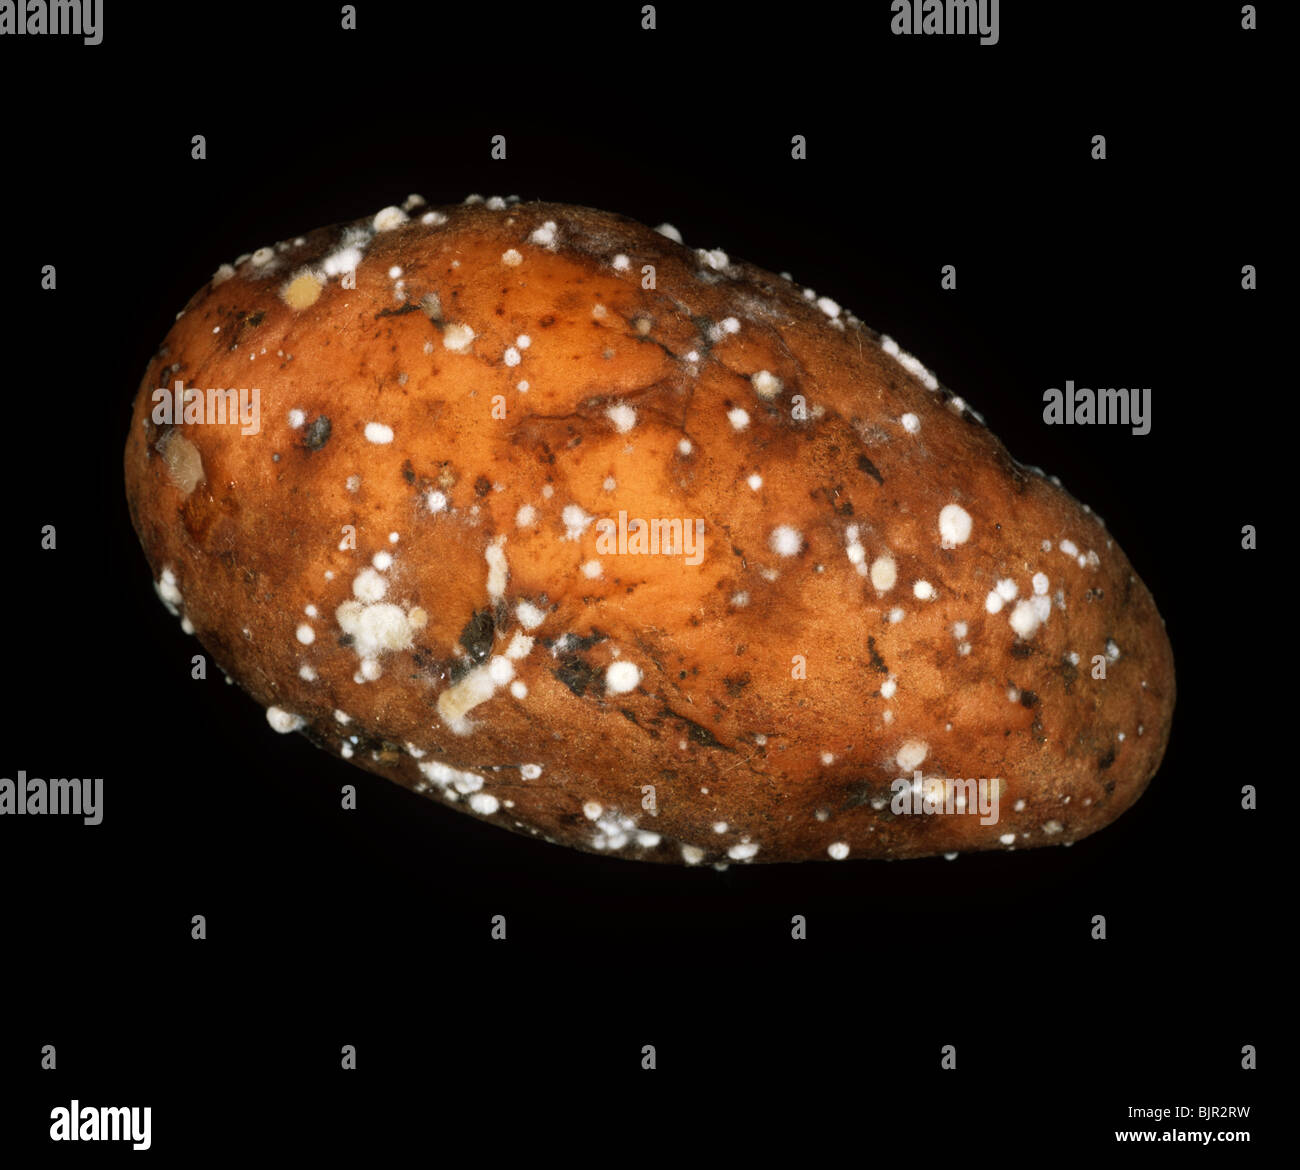 Gummiartige Fäulnis (Geotrichum Candidum) Knolle Infektion auf eine Kartoffel Stockfoto